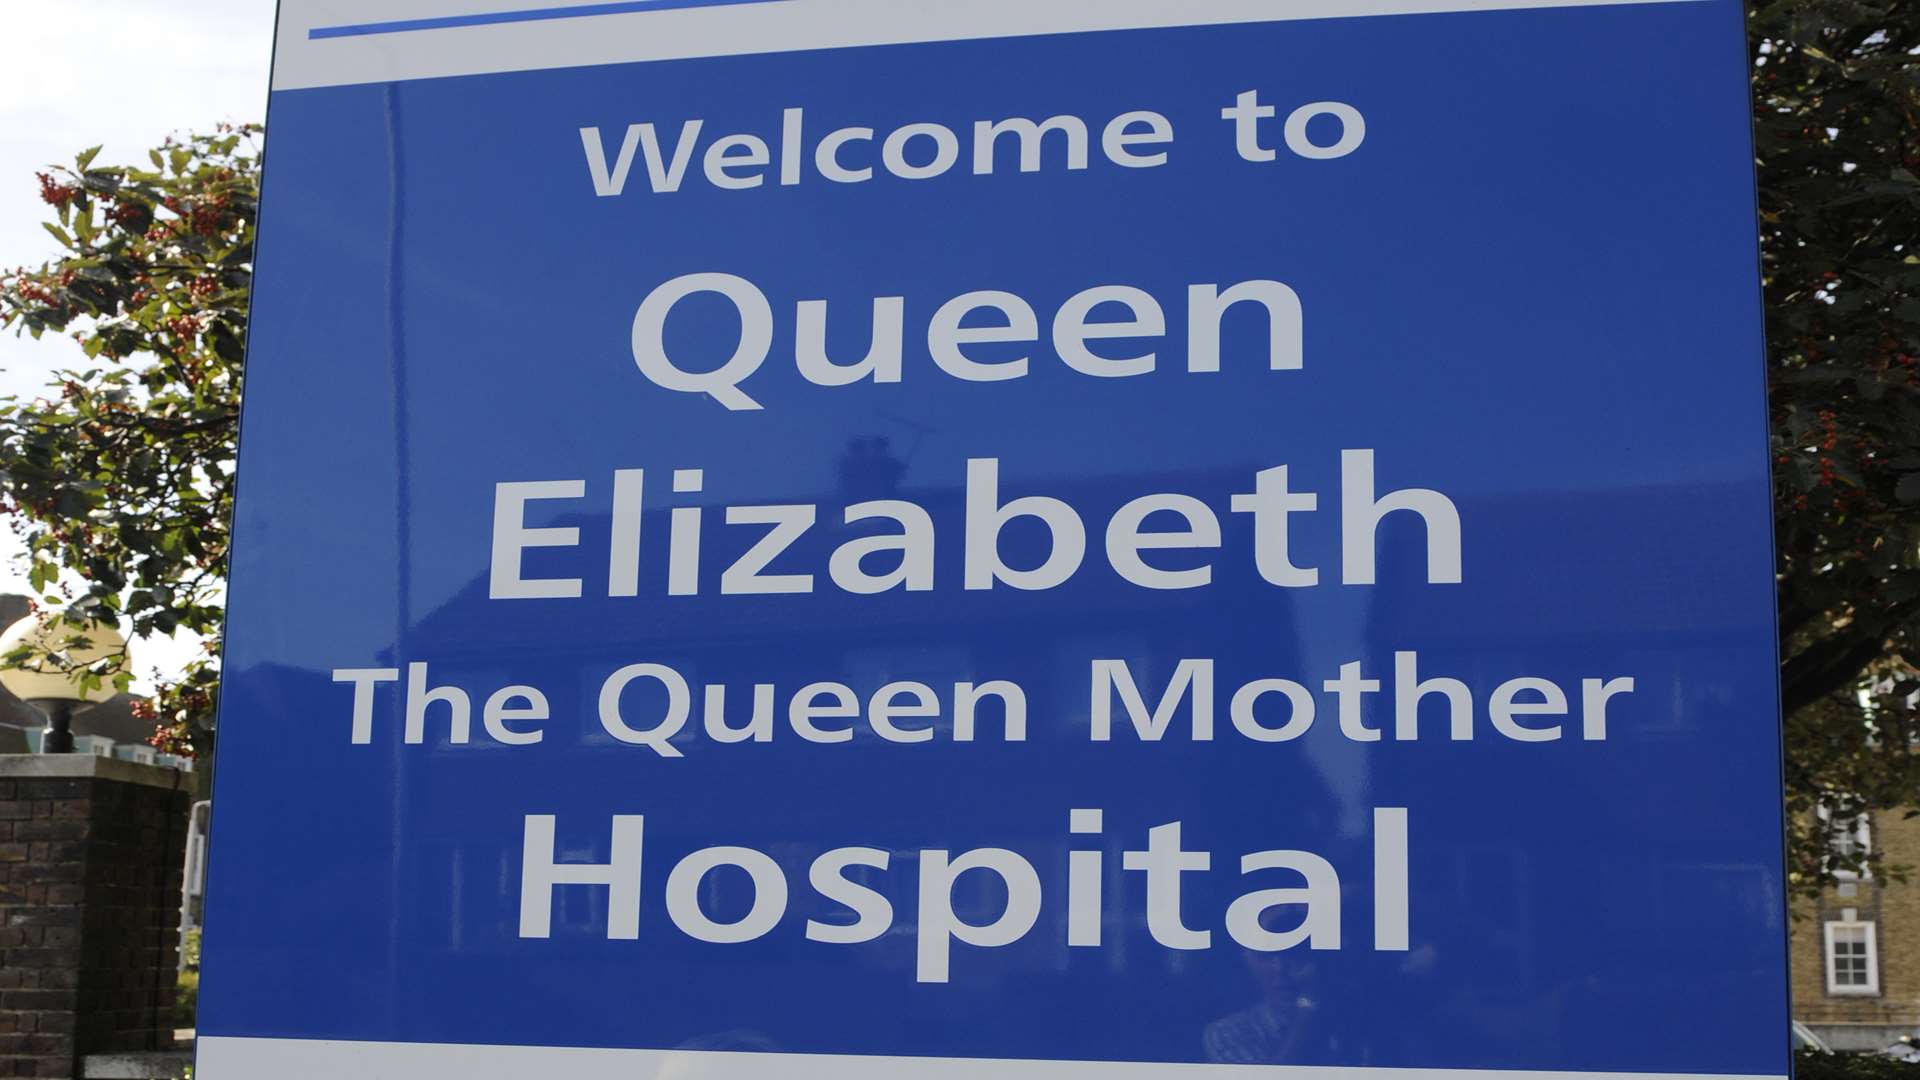 The QEQM hospital